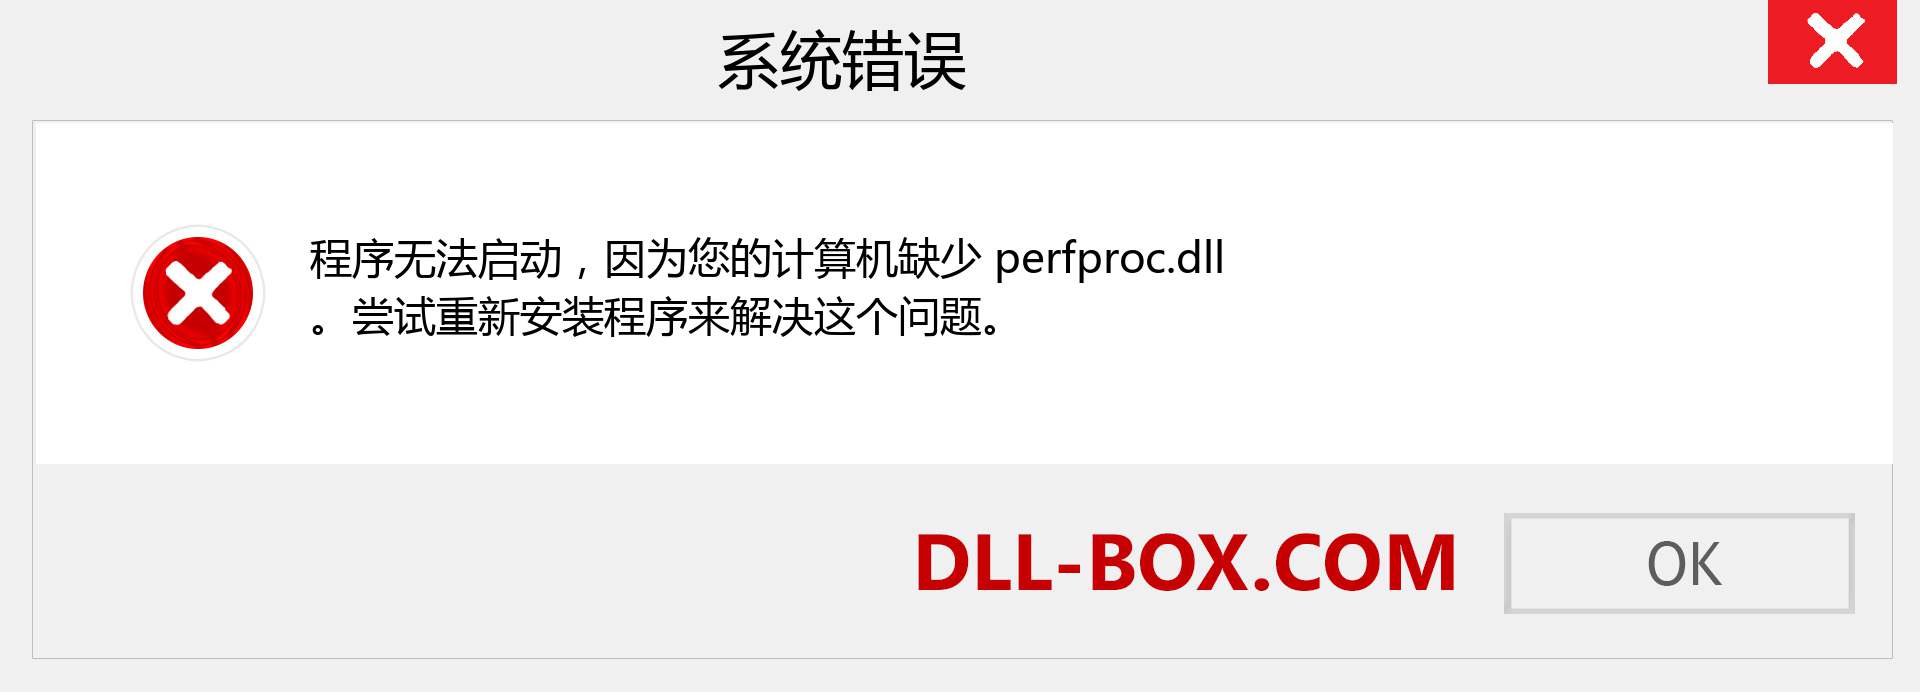 perfproc.dll 文件丢失？。 适用于 Windows 7、8、10 的下载 - 修复 Windows、照片、图像上的 perfproc dll 丢失错误